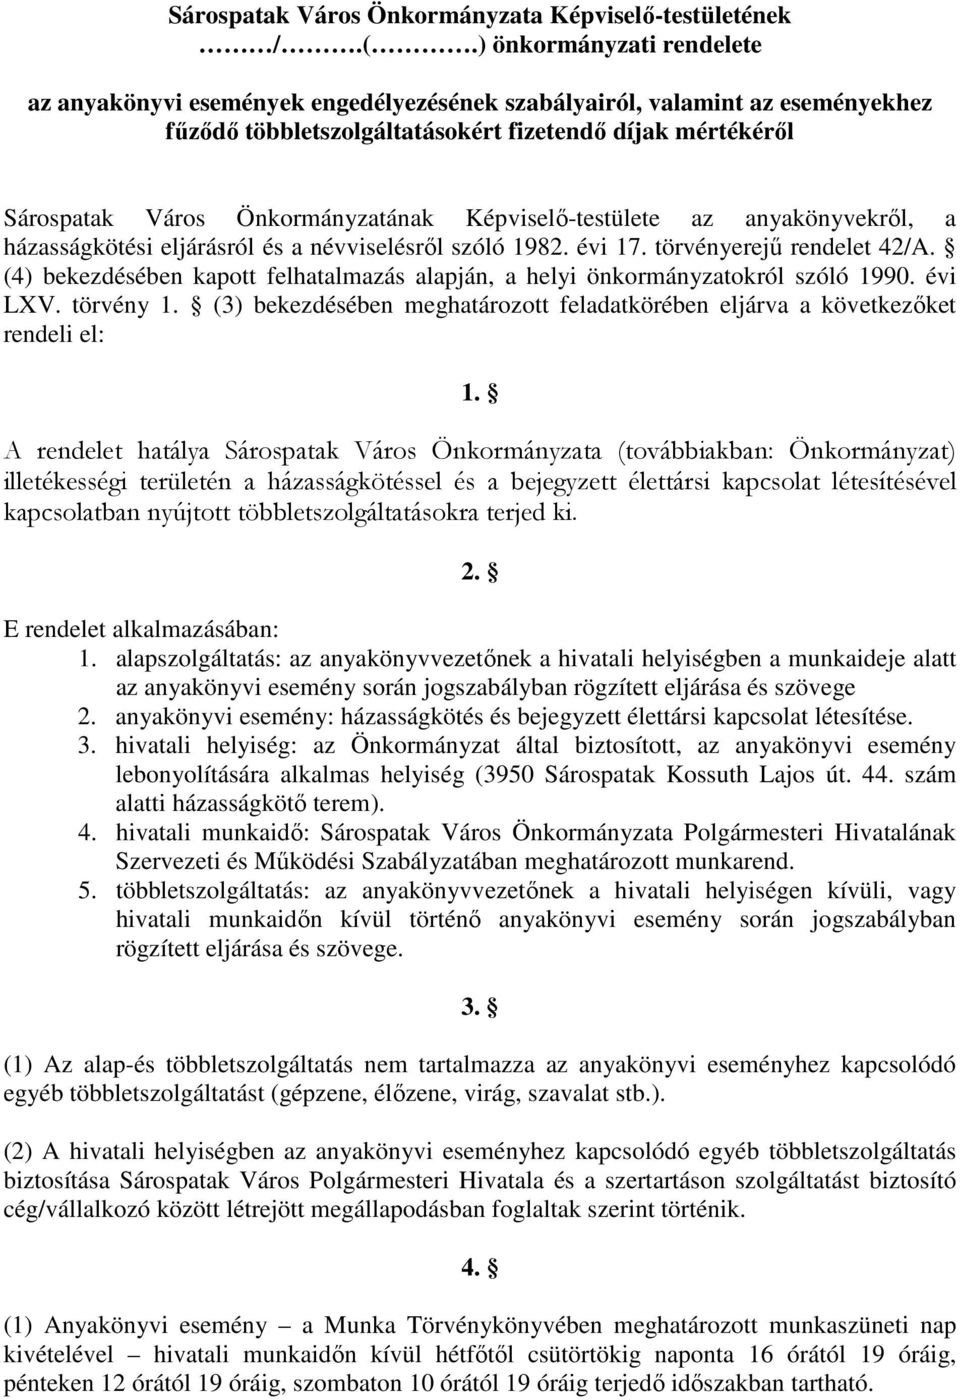 Képviselı-testülete az anyakönyvekrıl, a házasságkötési eljárásról és a névviselésrıl szóló 1982. évi 17. törvényerejő rendelet 42/A.